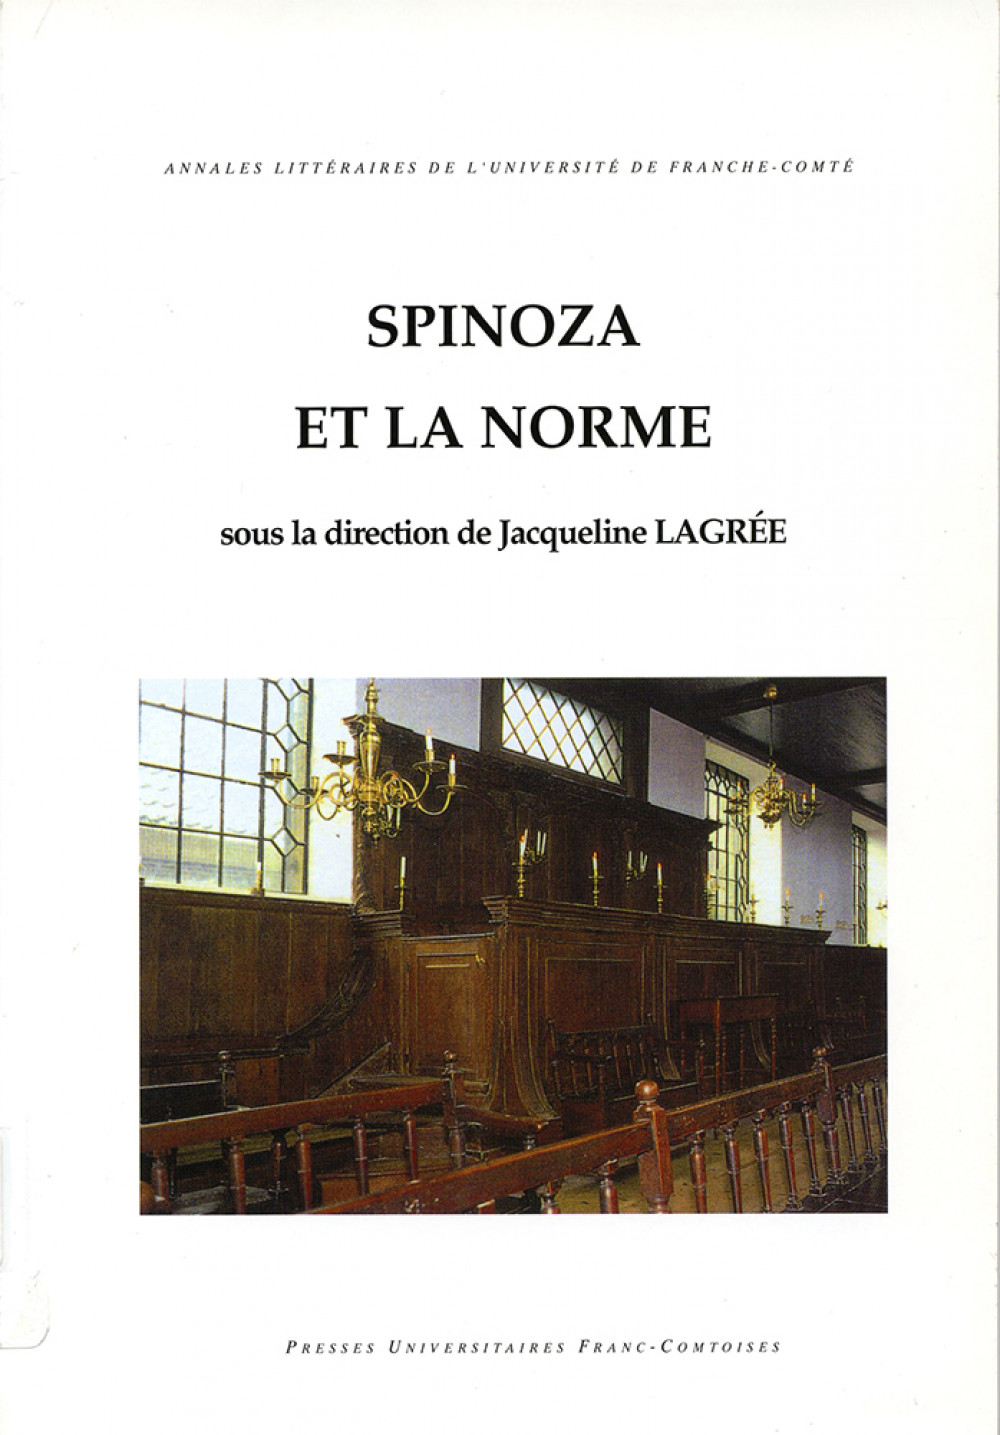 Spinoza et la norme